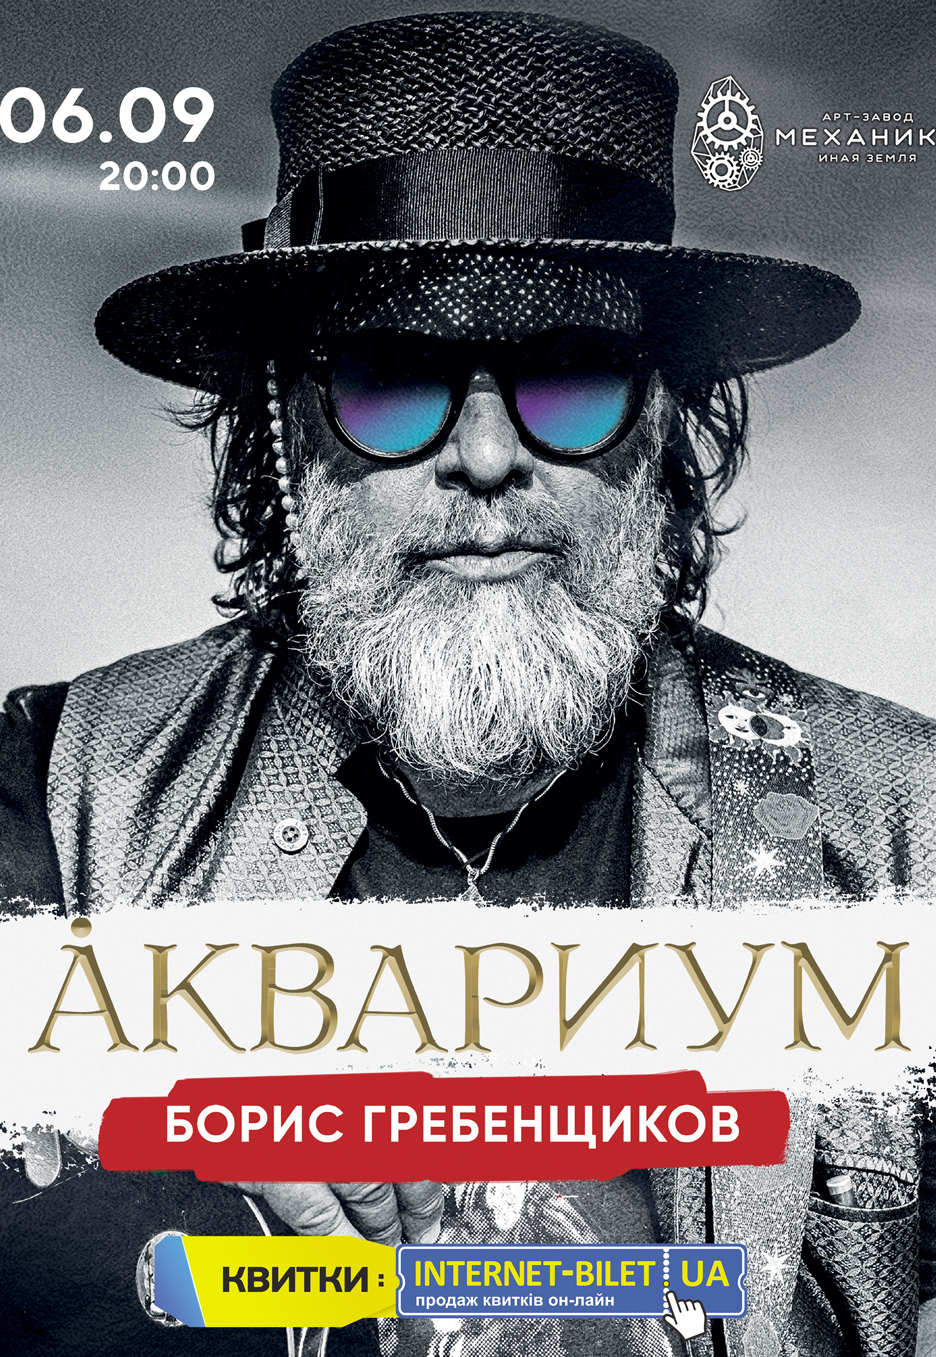 Akvarium Boris Grebenshikov Harkov 6 Sentyabrya 2020 Kupit Bilety V Internet Bilet Ua